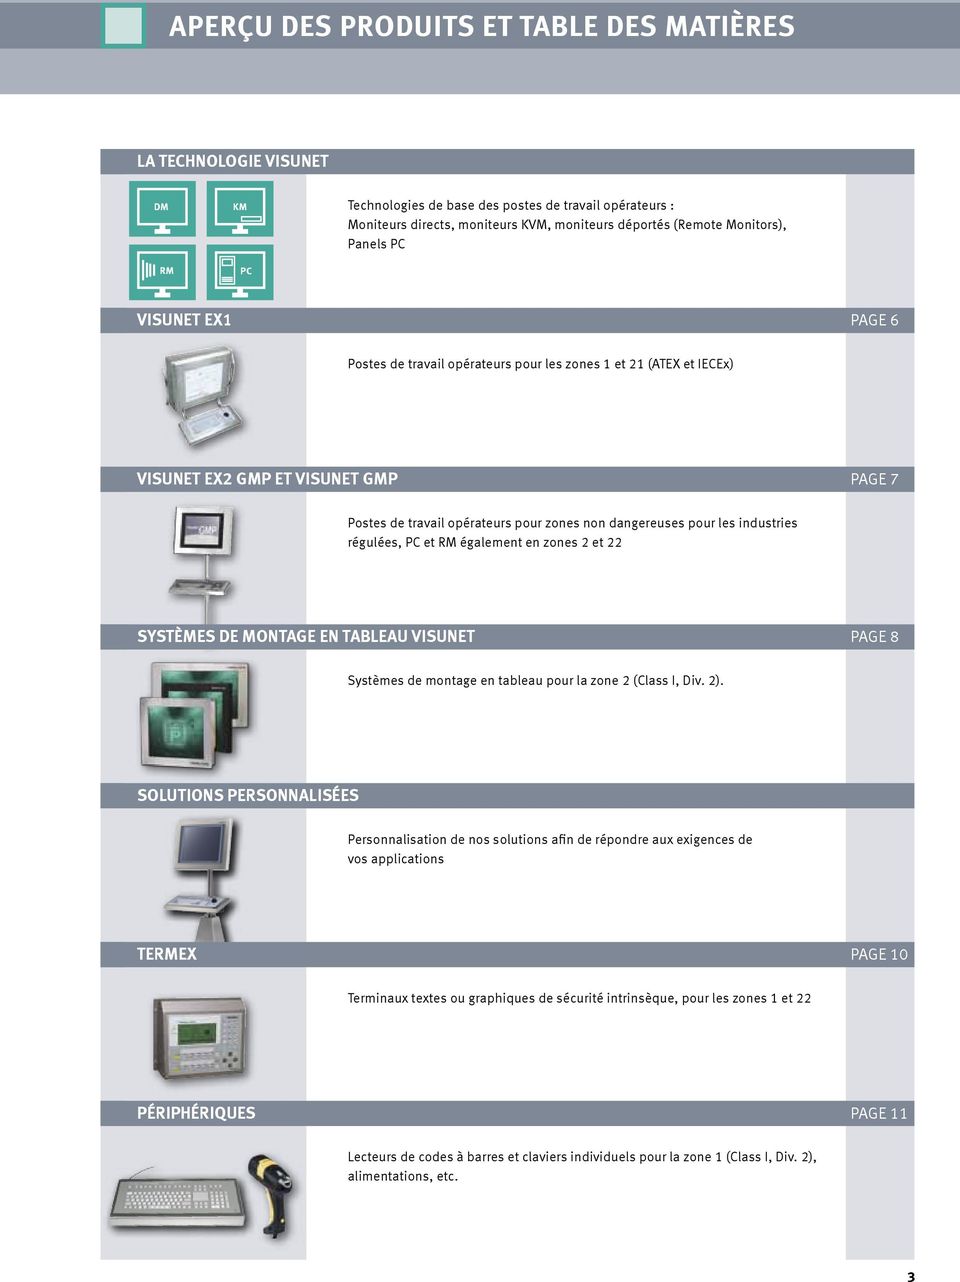 industries régulées, PC et RM également en zones 2 et 22 Systèmes de montage en tableau VisuNet page 8 Systèmes de montage en tableau pour la zone 2 (Class I, Div. 2).